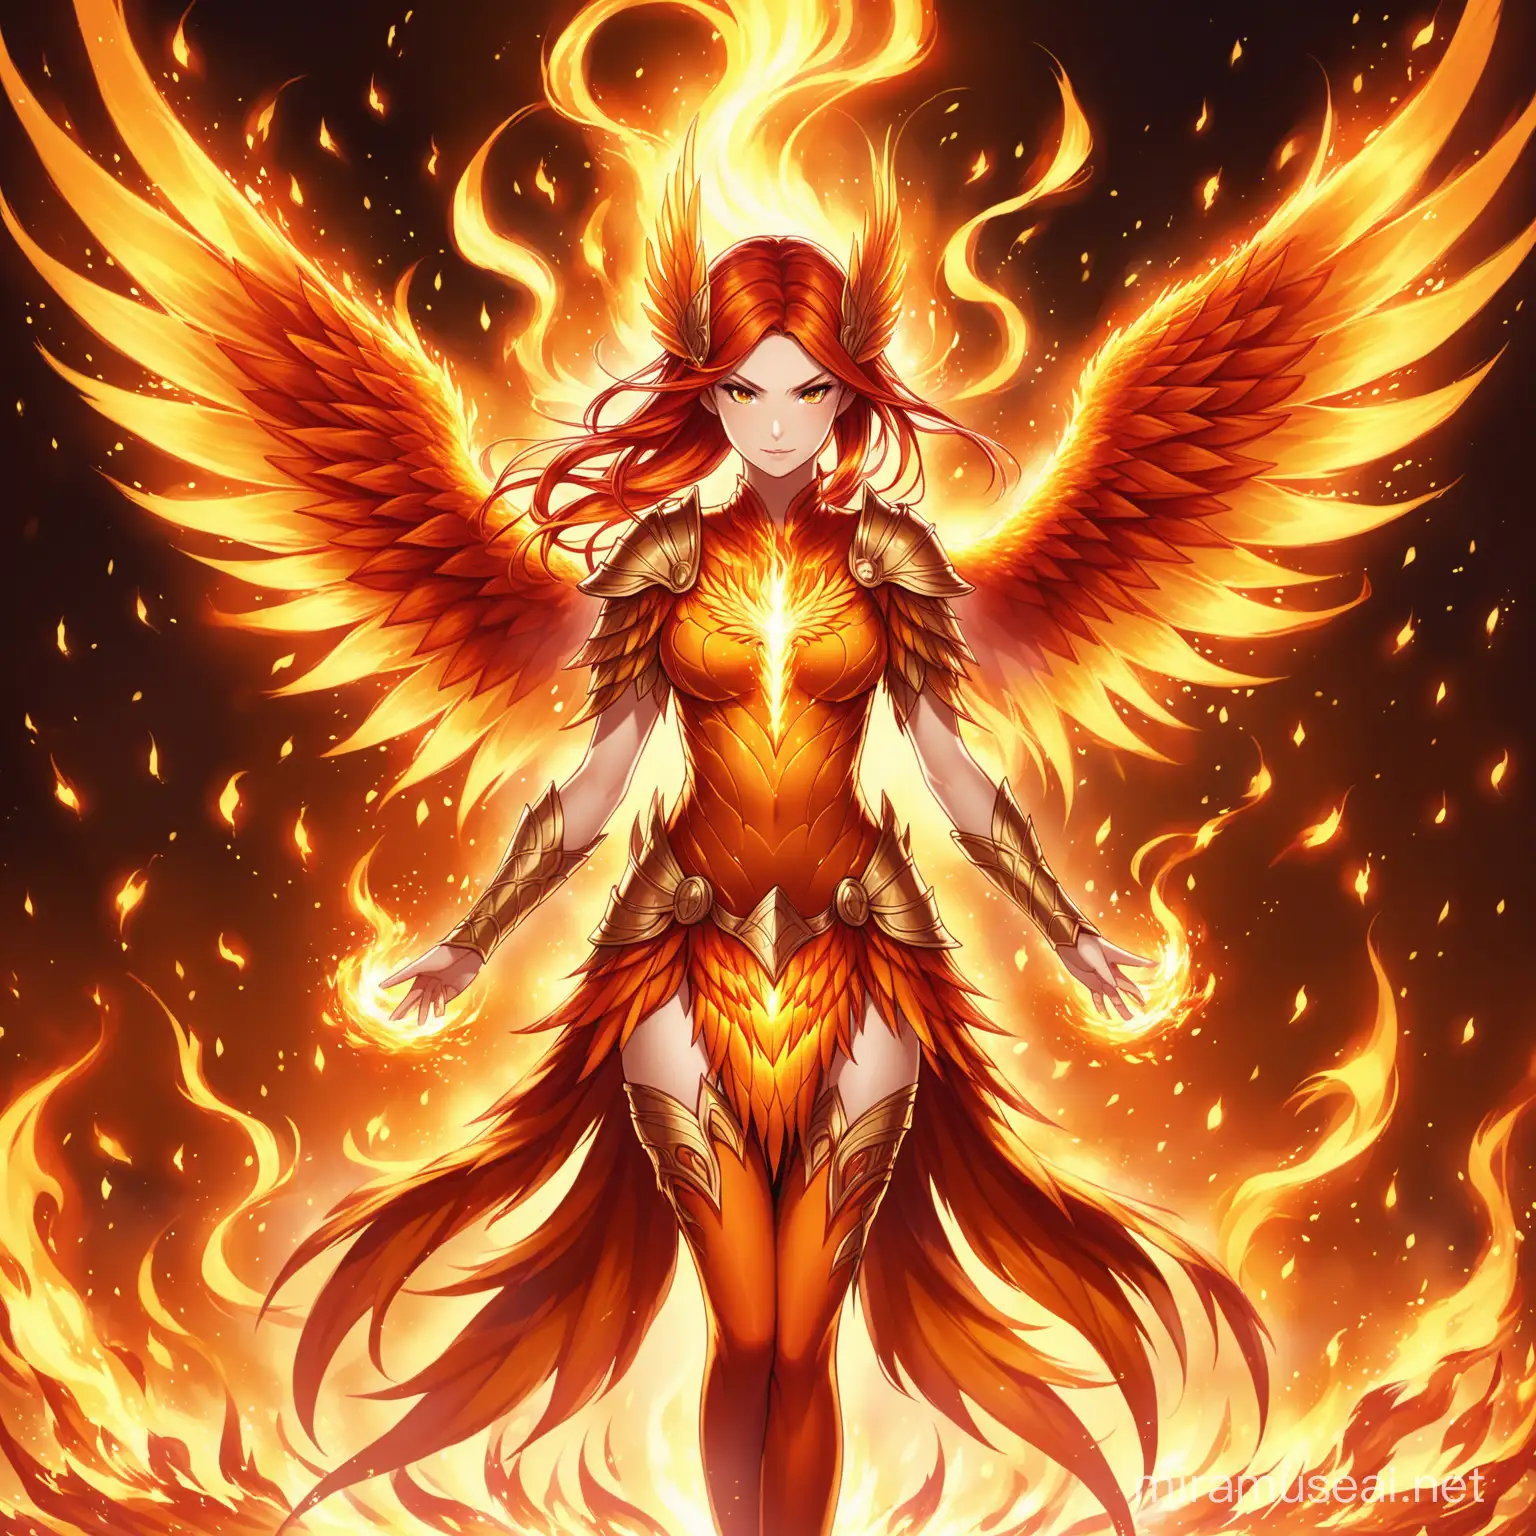 Fiery Female Phoenix Fairy Warrior in a Blaze of Glory